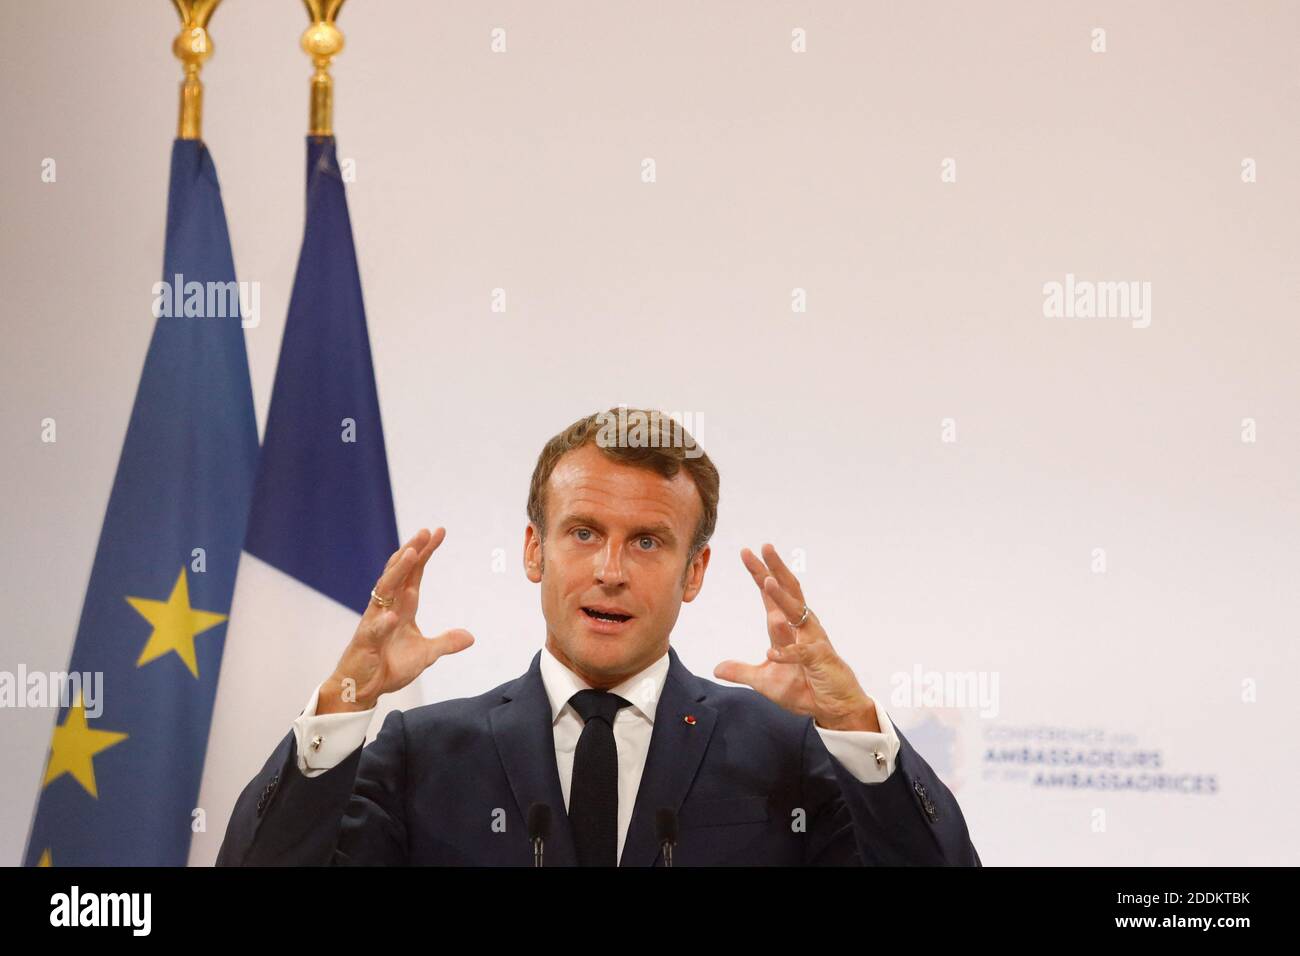 El presidente francés Emmanuel Macron pronunció un discurso durante la conferencia anual de embajadores franceses en el Palacio del Elíseo en París el 27 de agosto de 2019. Foto de Hamilton/Pool/ABACAPRESS.COM Foto de stock